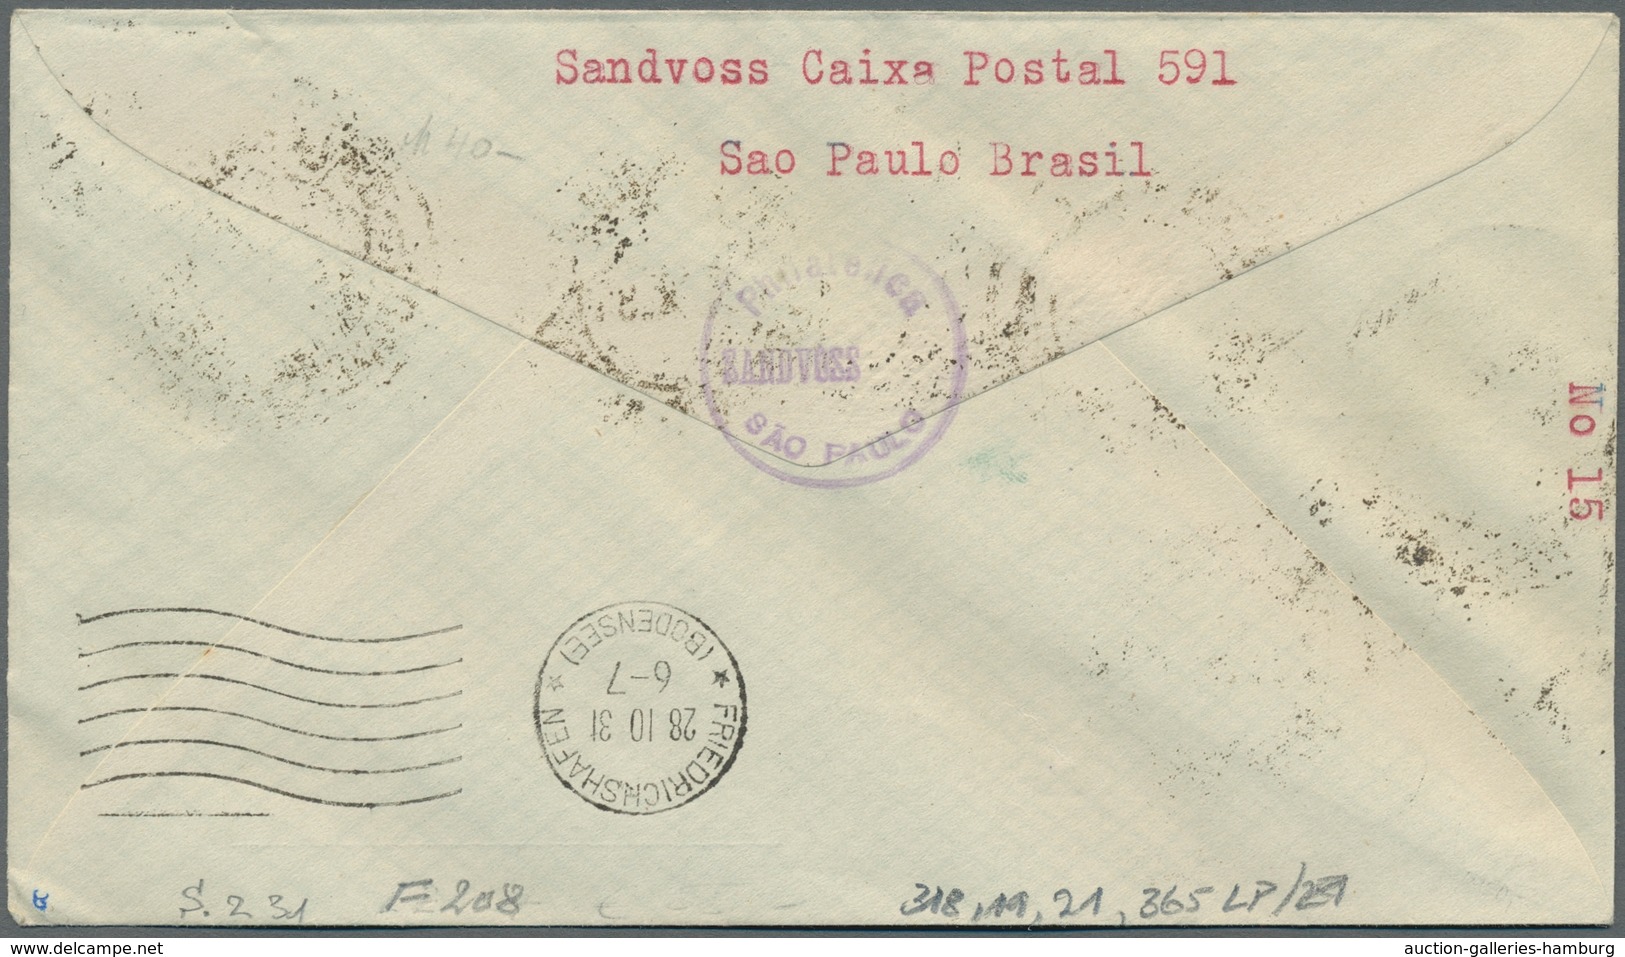 Zeppelinpost Übersee: 1931-1934, Partie von 4 Zeppelinpostbriefen mit brasilianischer Frankatur, dav